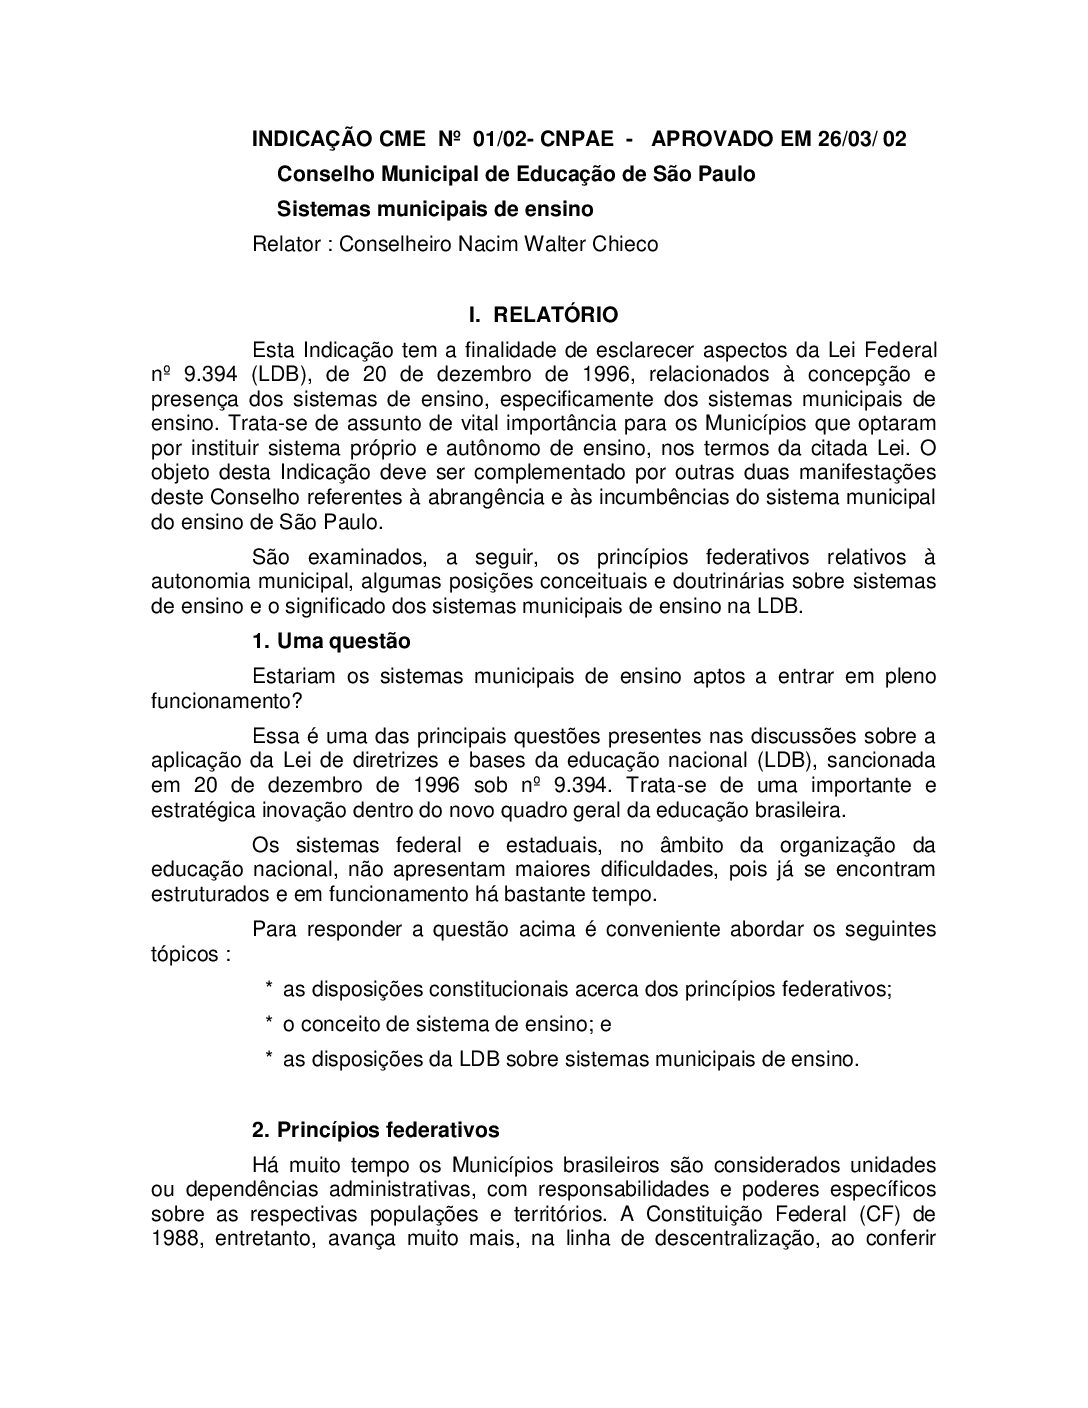 Indicação CME nº 01/2002 - Sistemas Municipais de Ensino